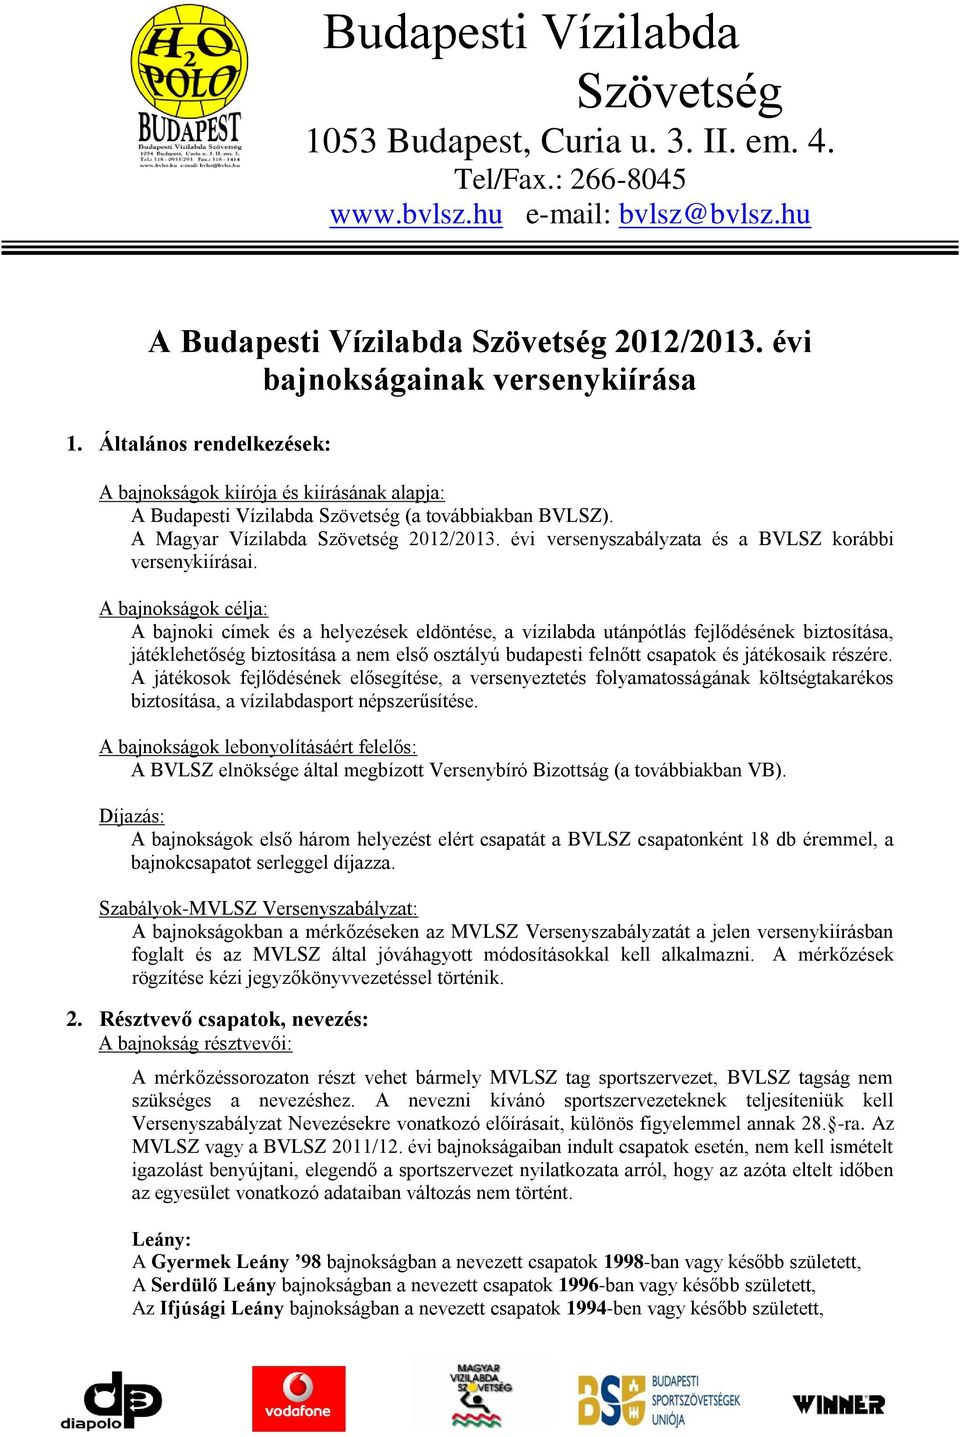 A Magyar Vízilabda Szövetség 2012/2013. évi versenyszabályzata és a BVLSZ korábbi versenykiírásai.